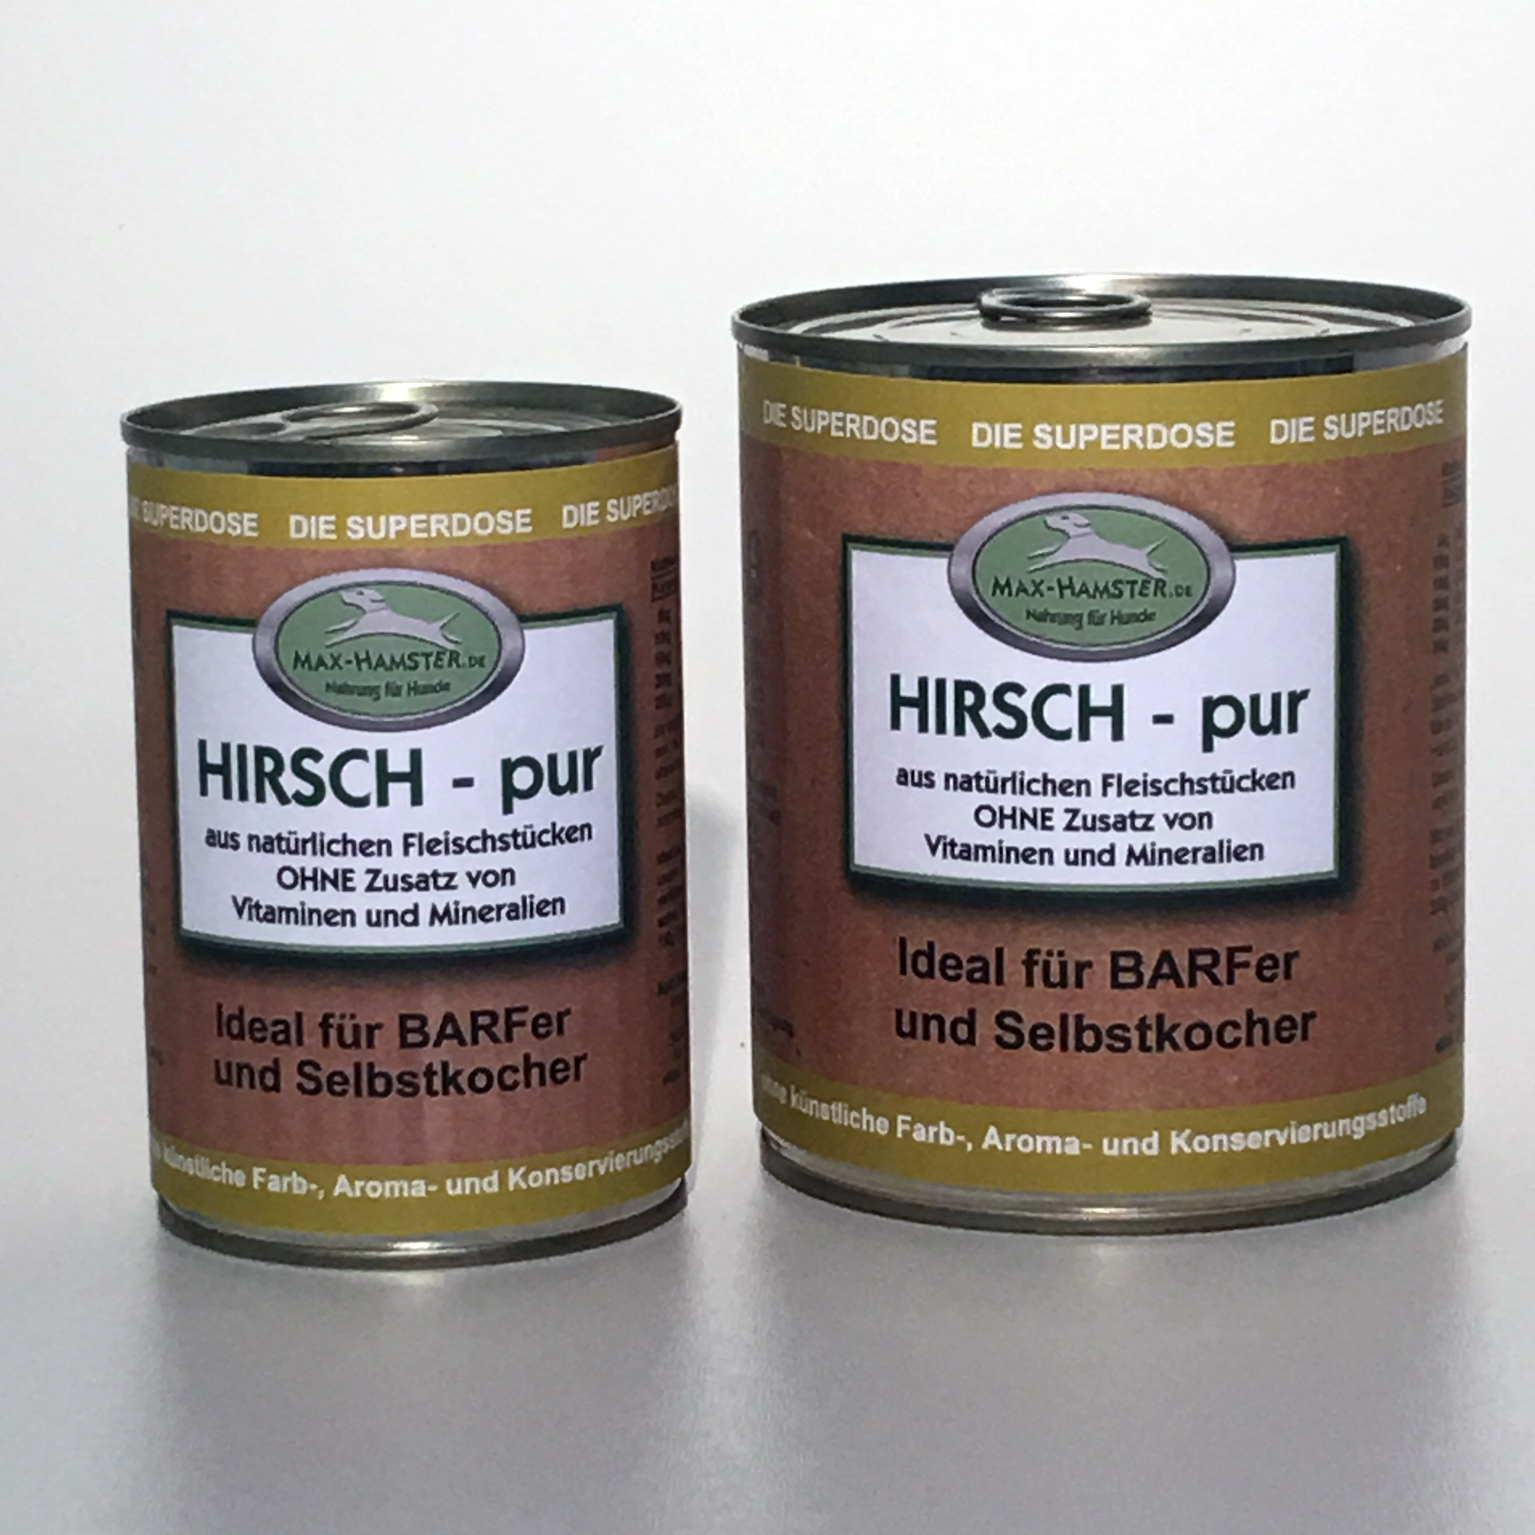 Hirsch - pur   Premium Dosenfleisch OHNE Zusätze  1x 400g